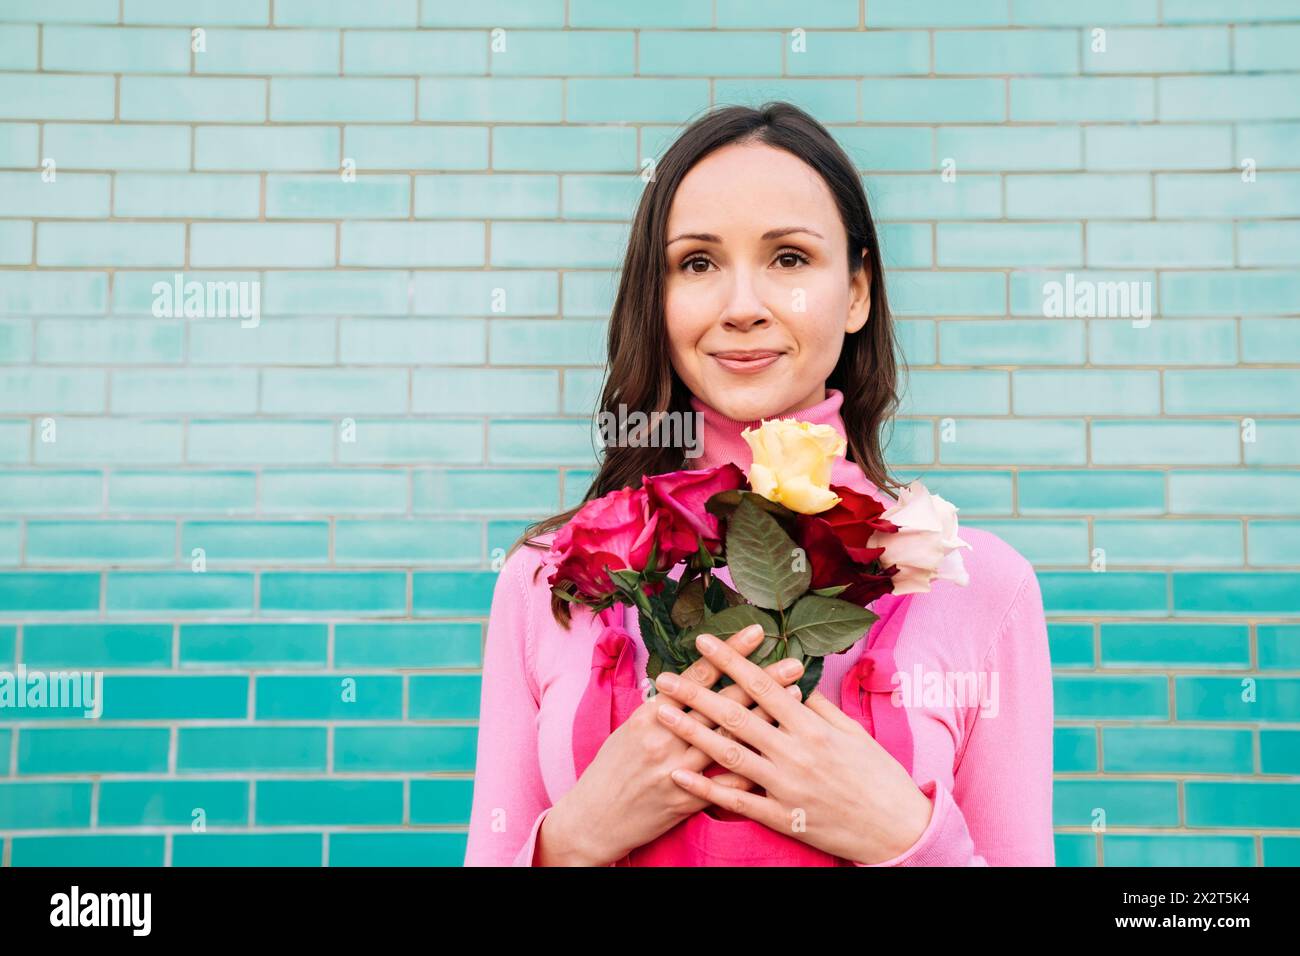 Sourire belle femme avec des roses devant un mur de briques bleues Banque D'Images